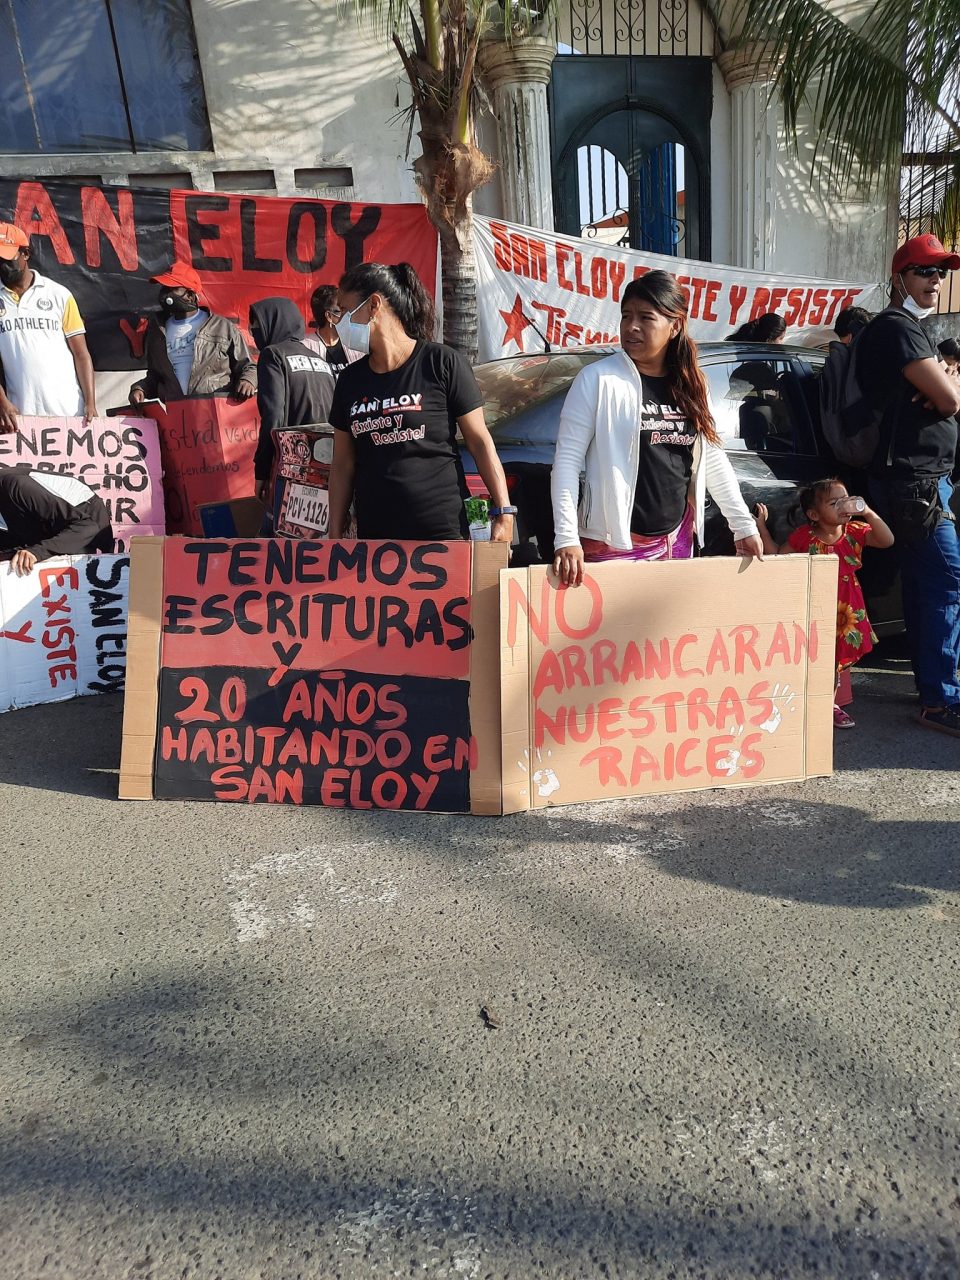 Guevarista Movement denies excesses in Quito protest